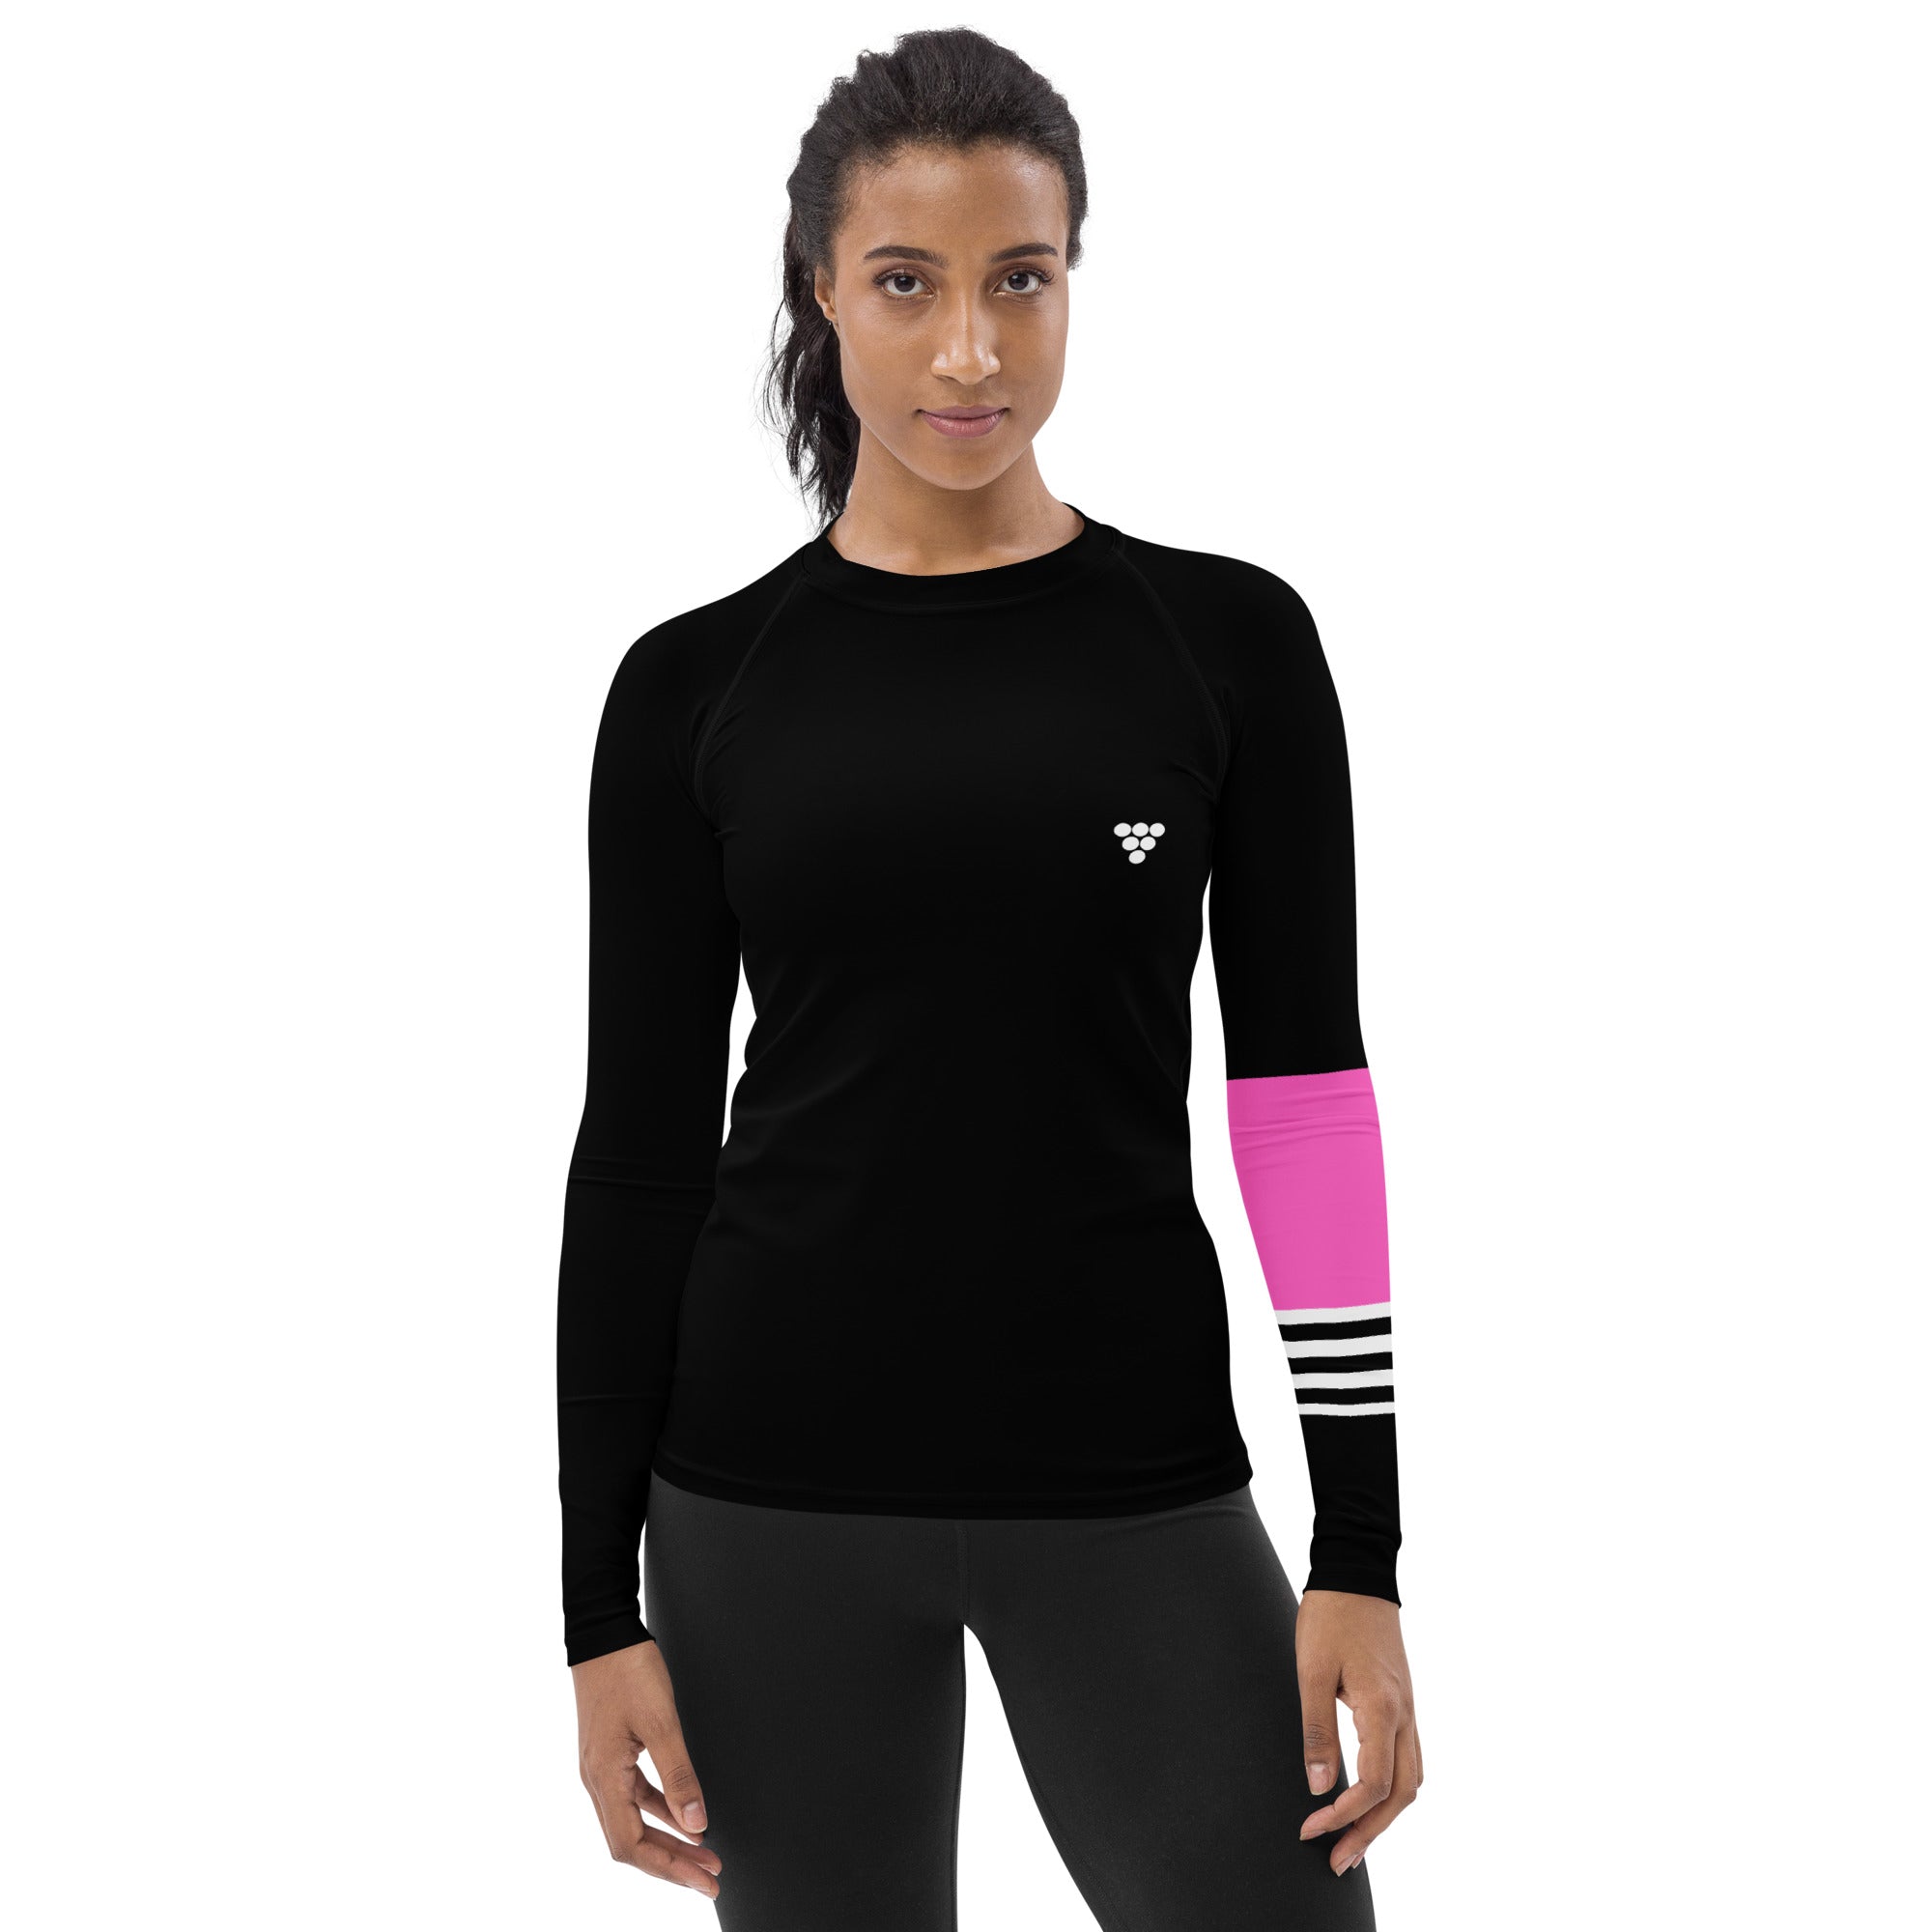 Always Surf - Long Sleeve UPF 50 Rash Vest for Women